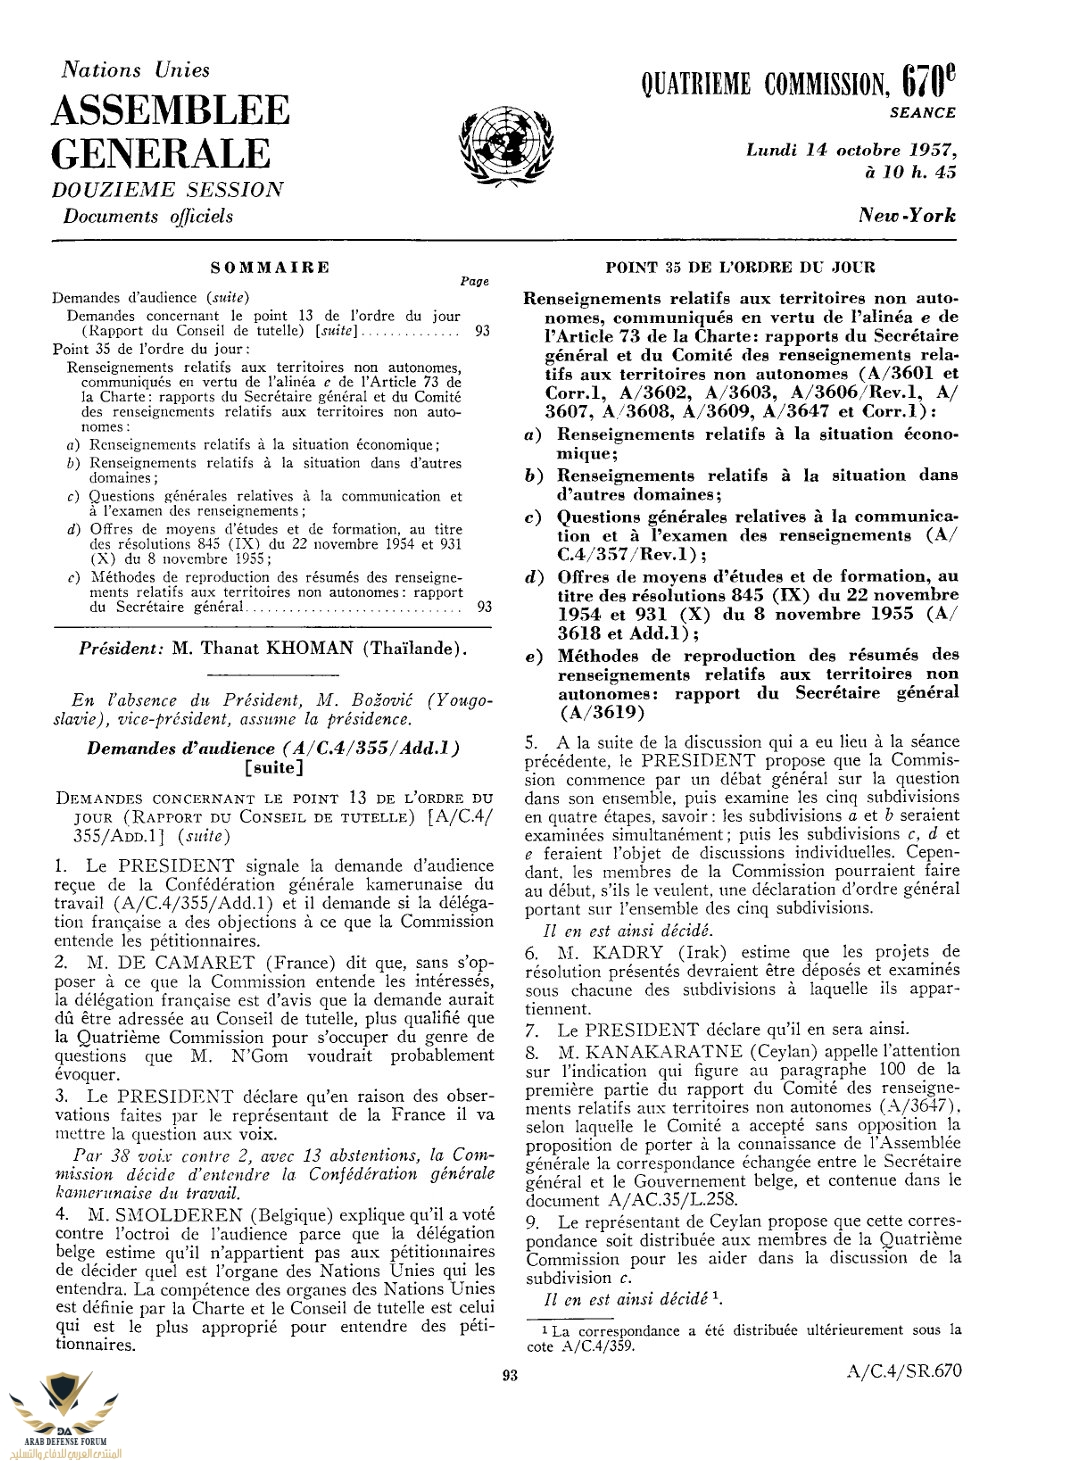 وثيقة للأمم المتحدة حول مطالبة المغرب بموريتانيا والصحراء سنة 1957.jpg